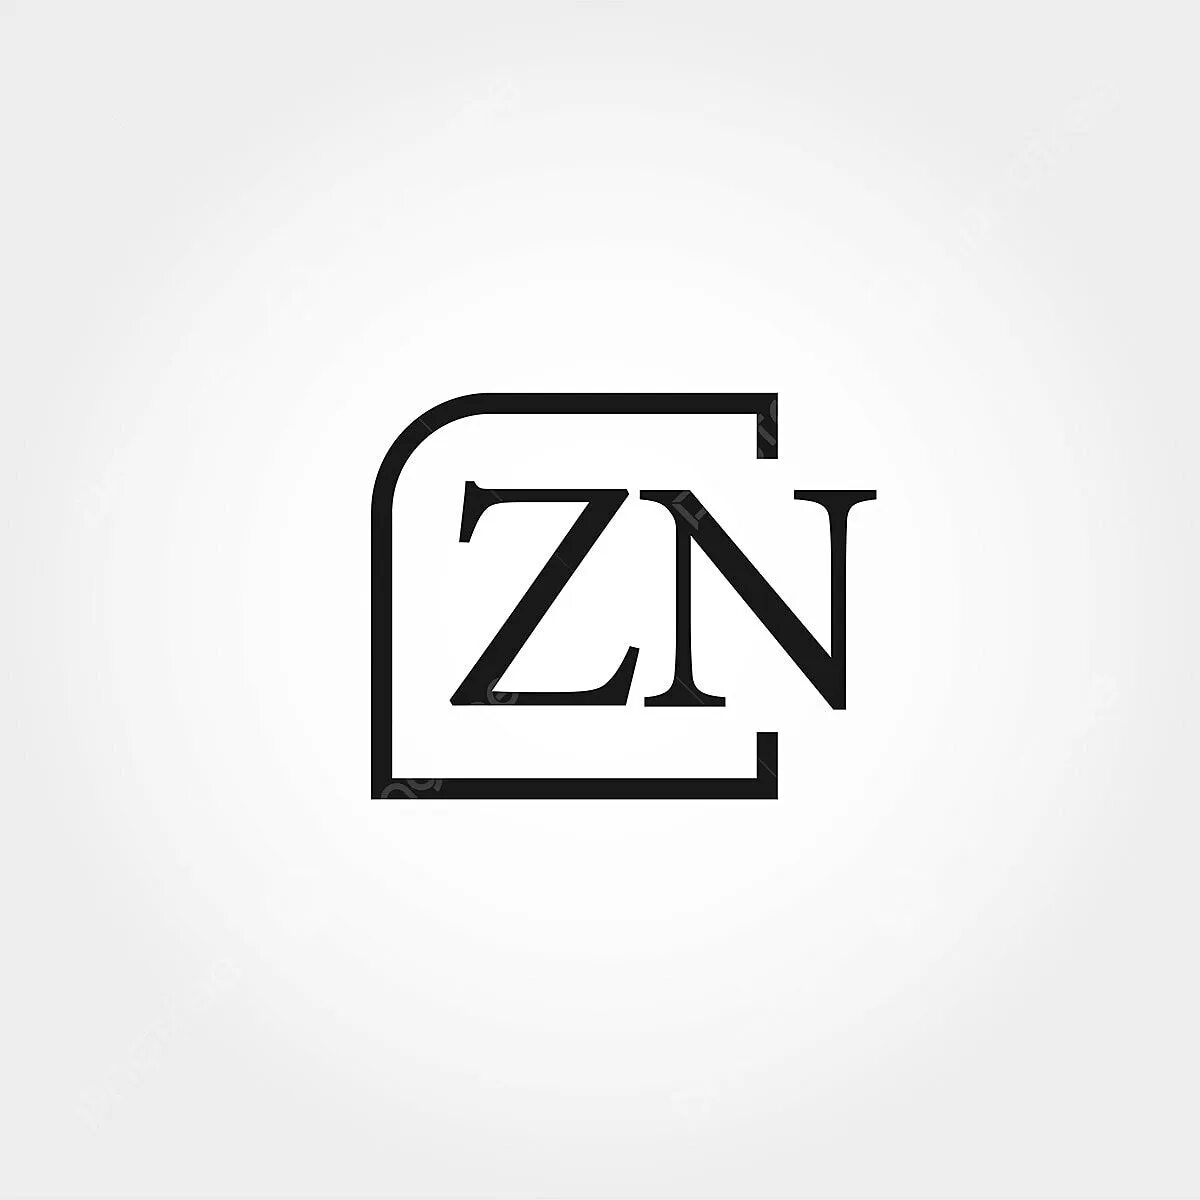 Zn z. ZN логотип. Буква z логотип. Буквы ZN. Логотипы букв zh.